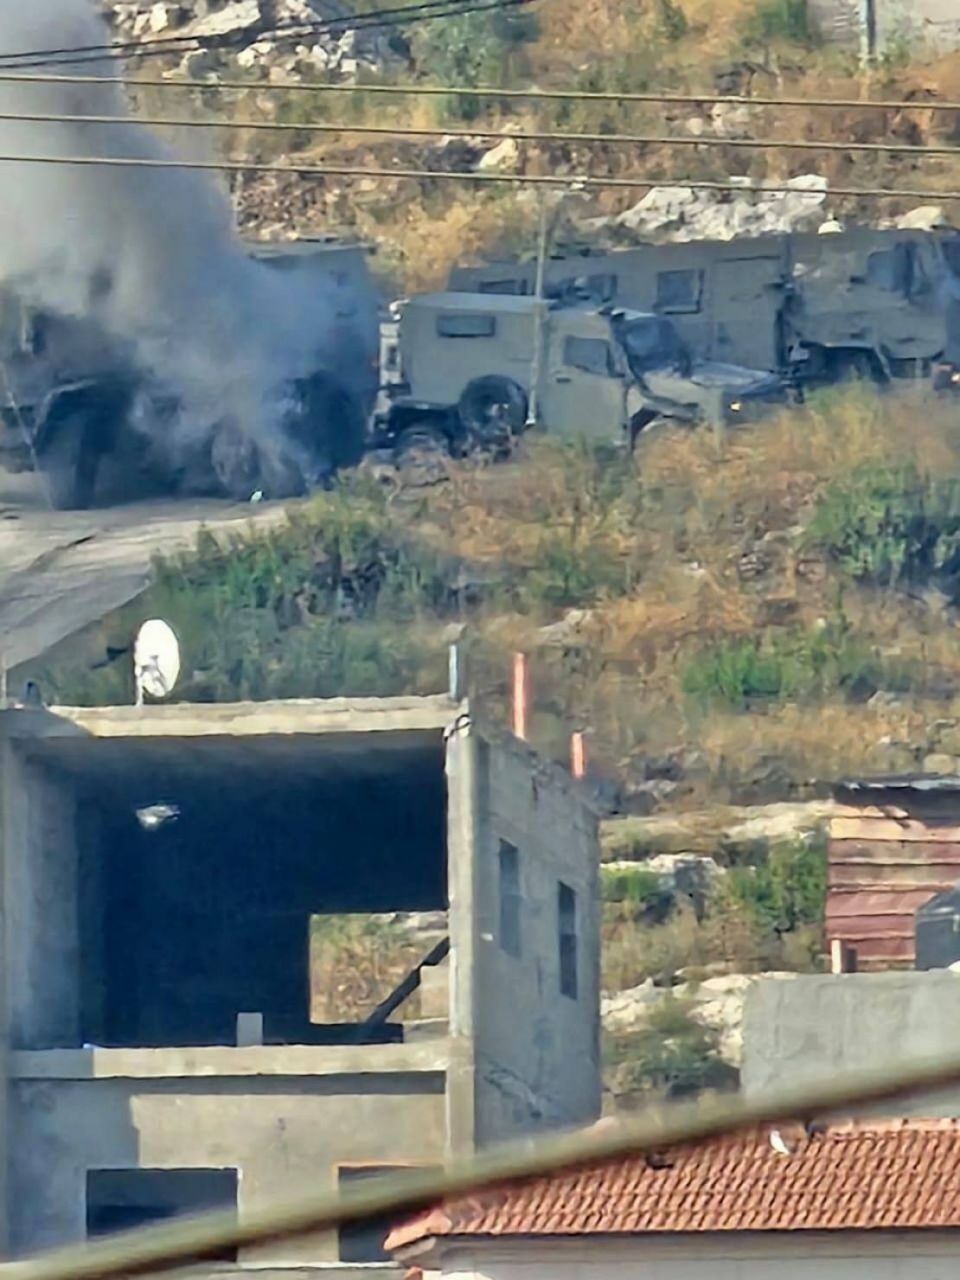 إصابة 6 جنود محتلّين بتفجير مركبتهم بجنين أثناء اقتحام وحـ.ـشي خلّف 3 شـ.ـهداء و29 مصاباً فلسطينياً حتى الساعة